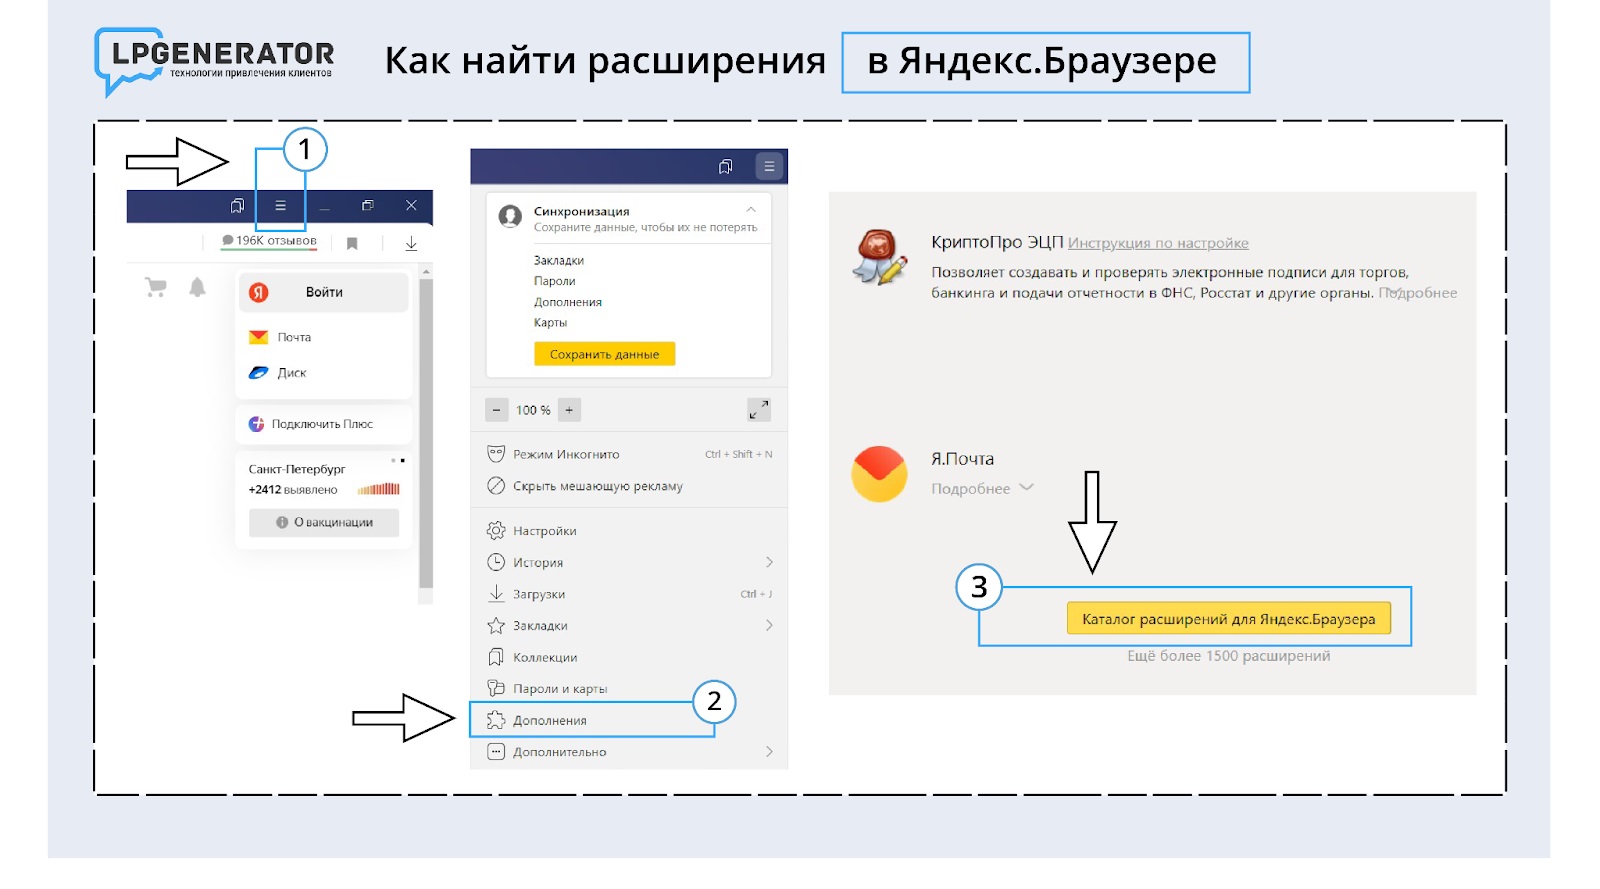 Установить расширение для Яндекс браузера